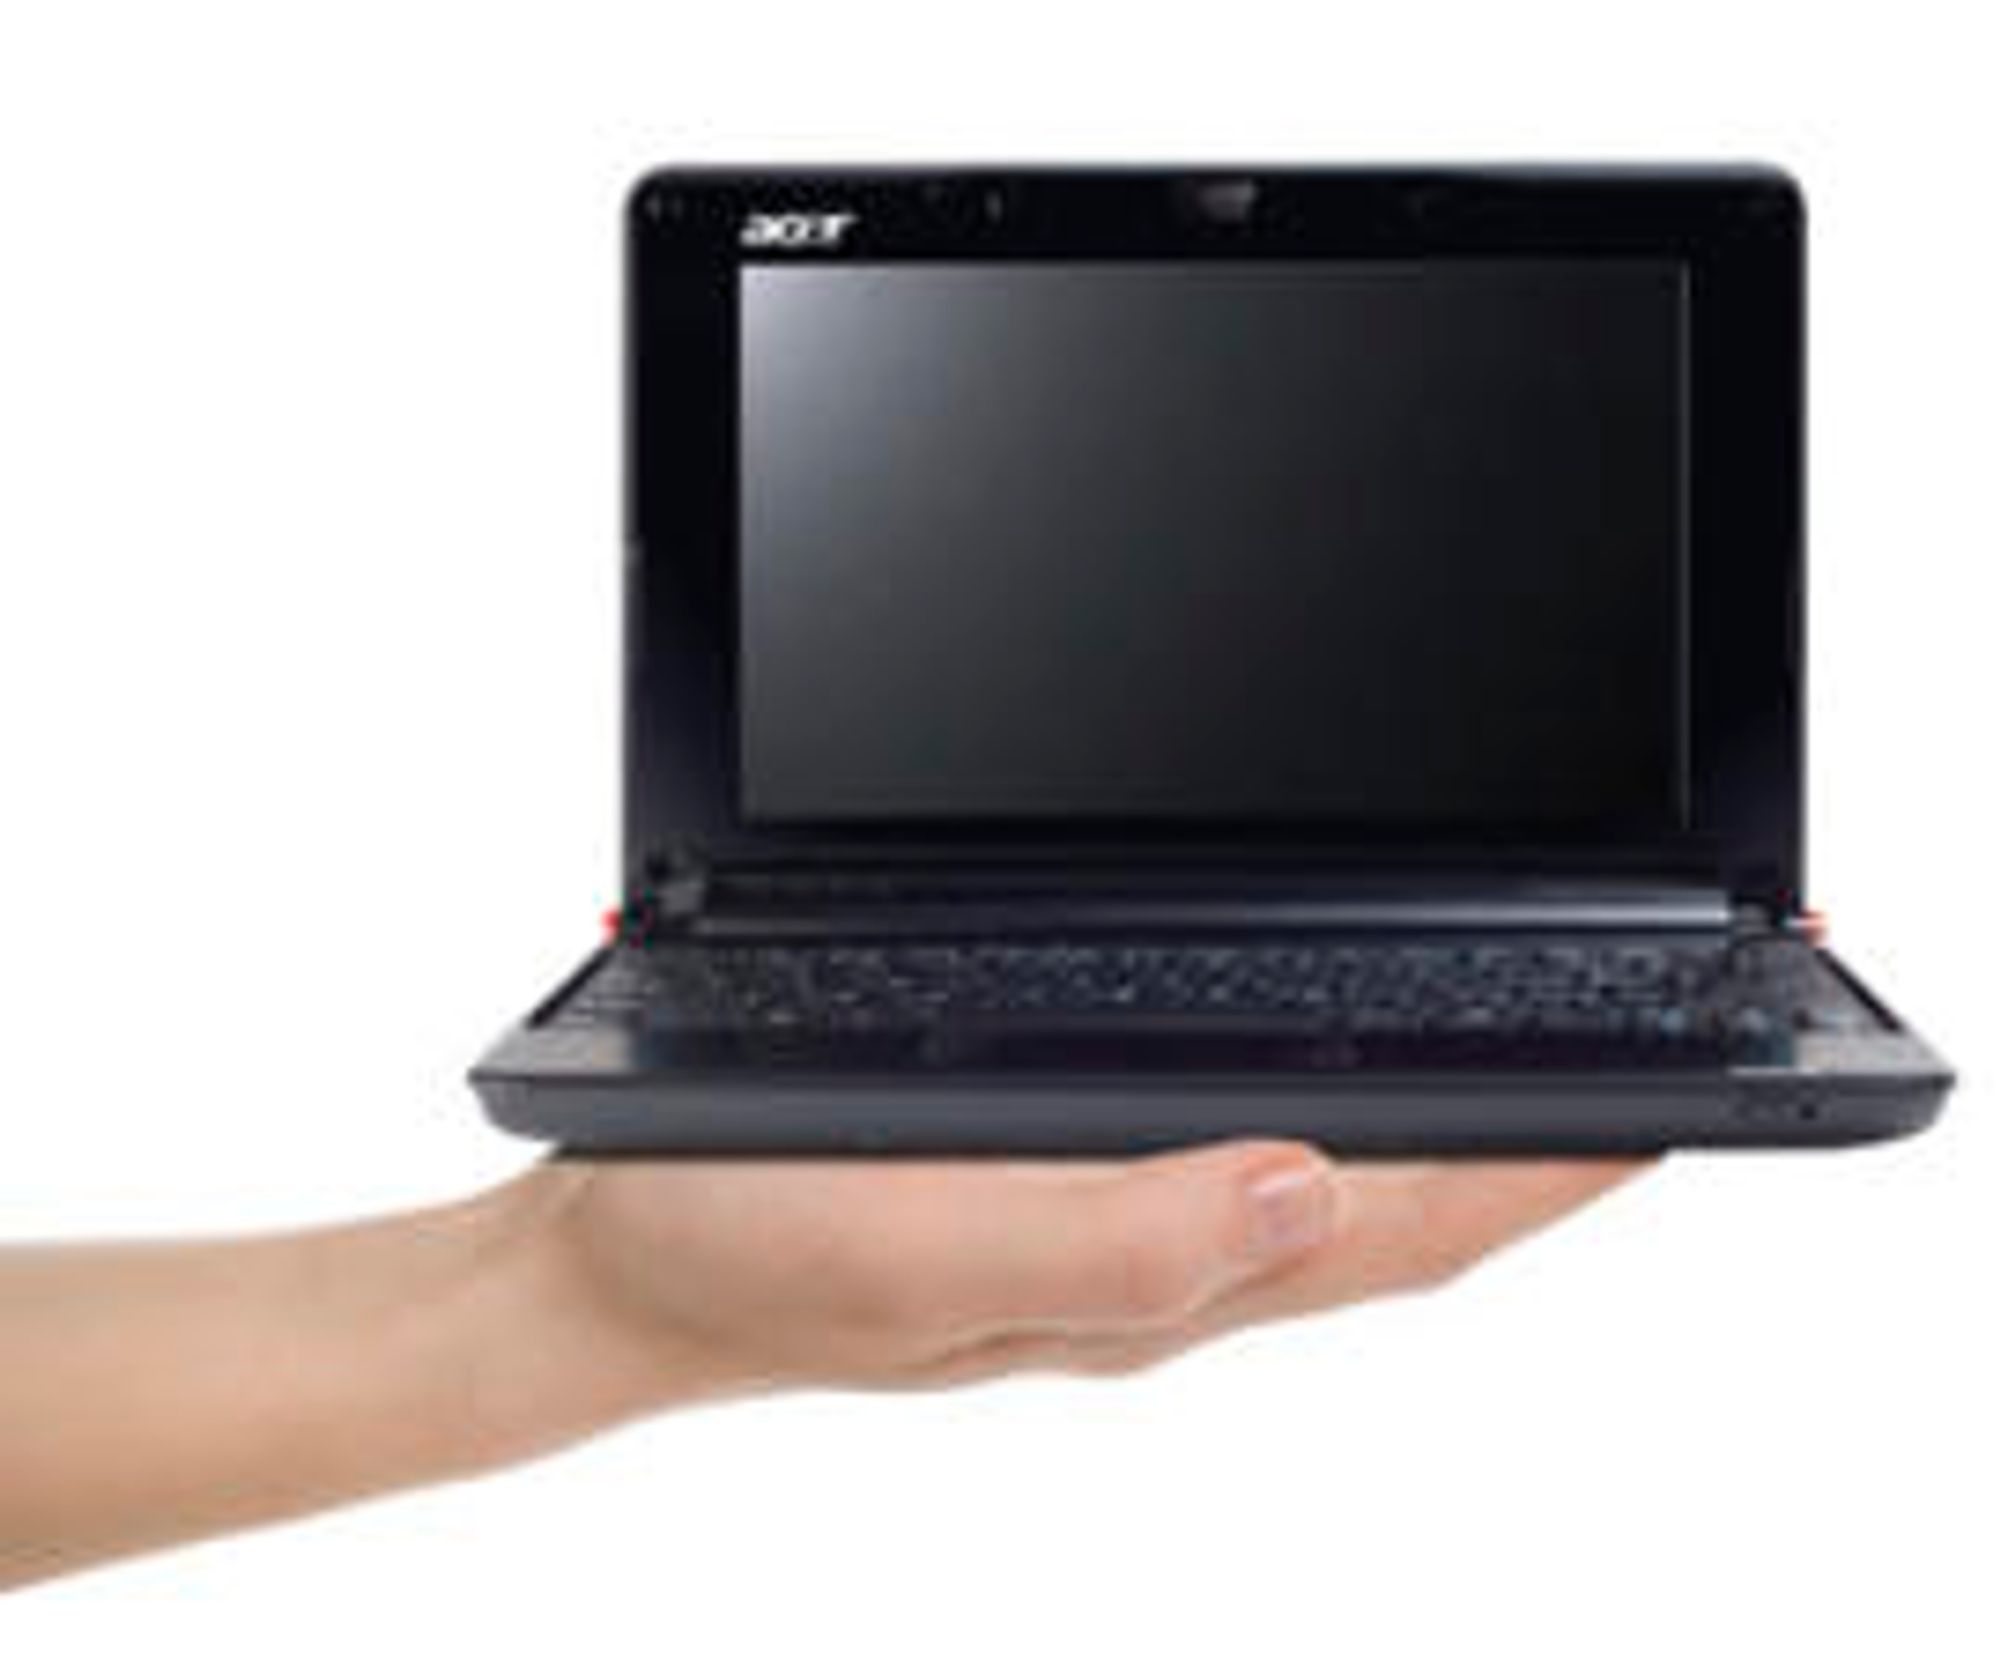  Denne Acer netbook-en tilbys av AT&amp;amp;T sammen med mobilt bredb&amp;aring;nd i USA. 